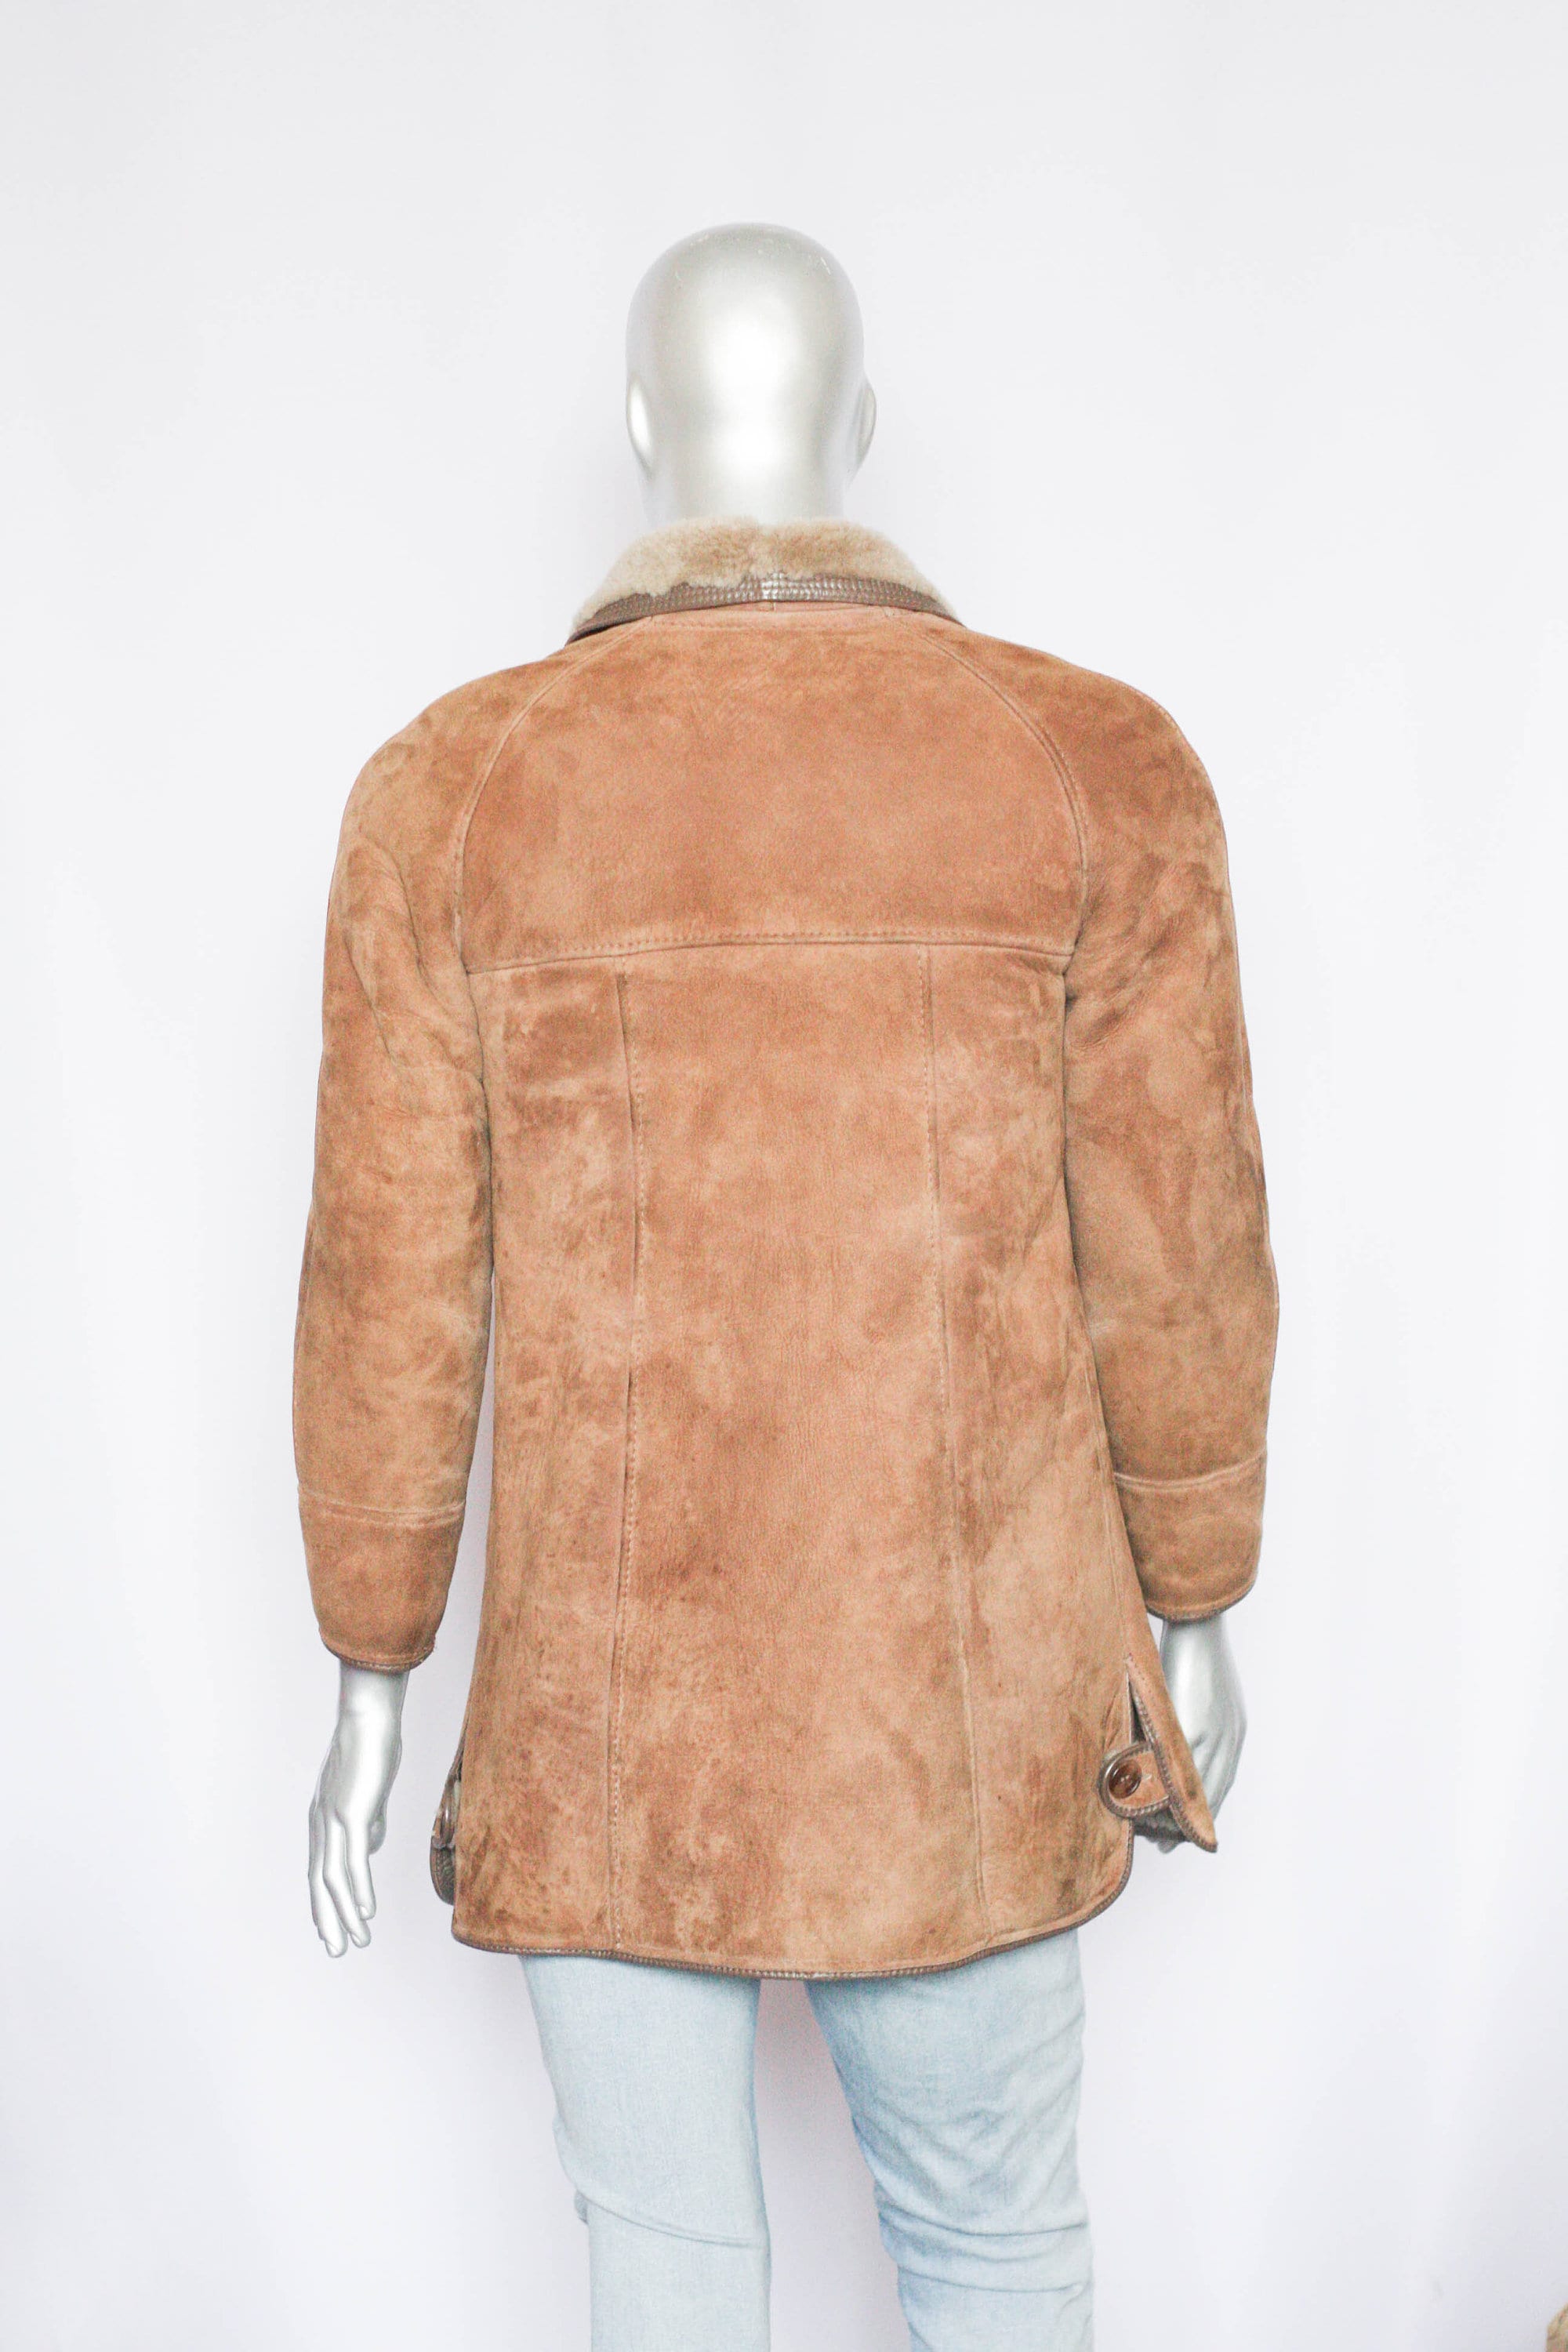 MechanicalOrange Unisex Lamb Leather Winter Coat